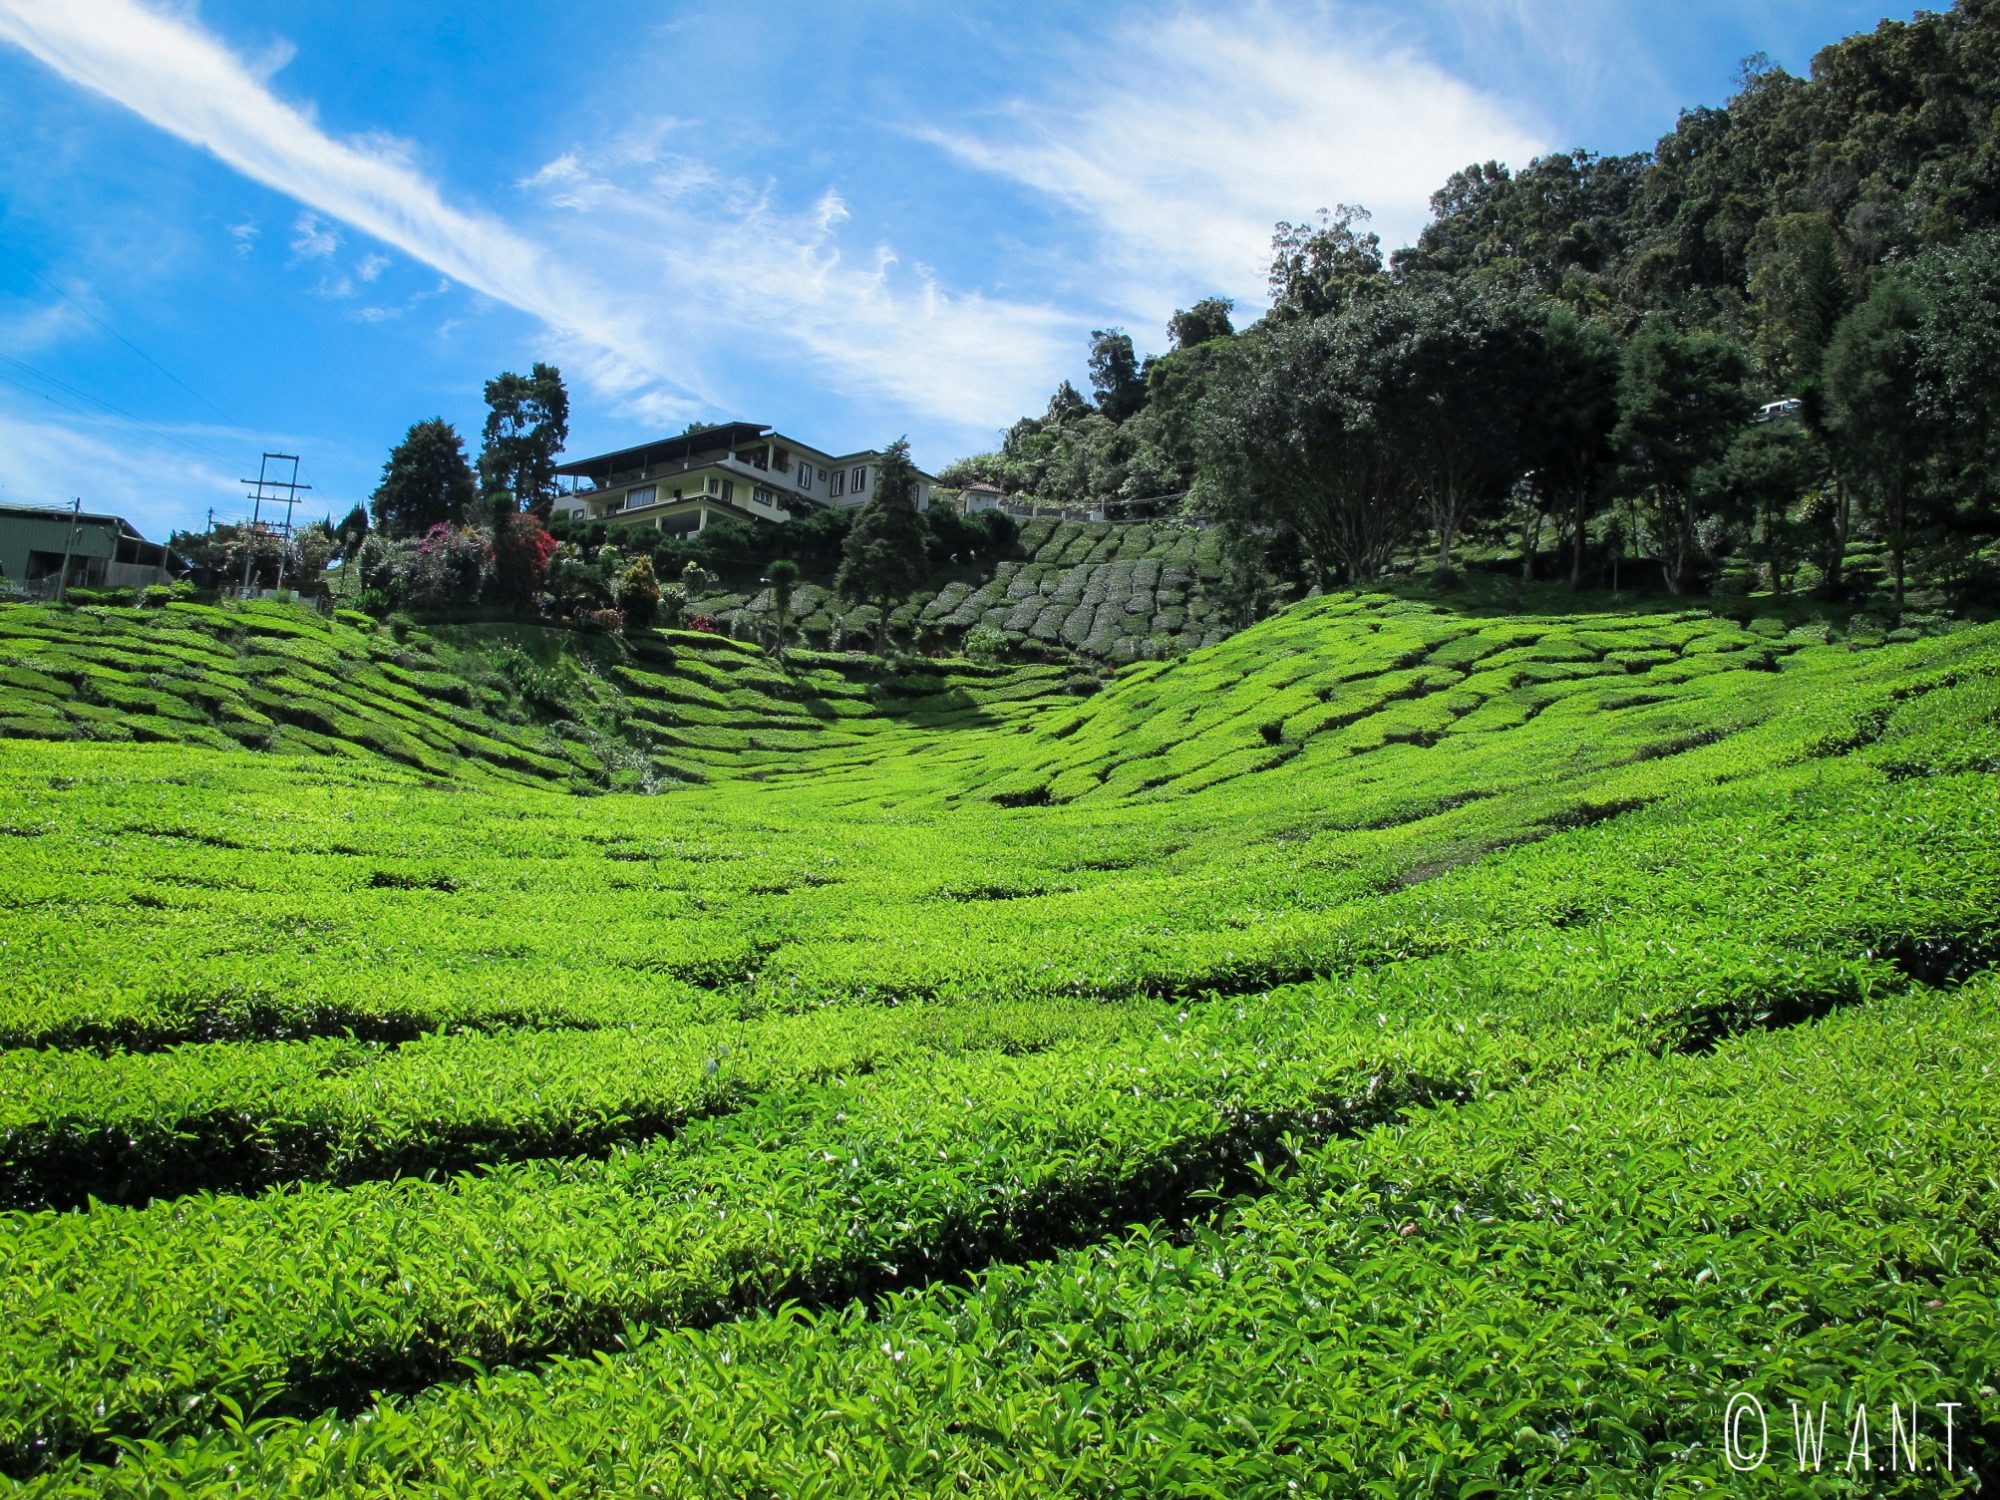 Le soleil donne une couleur verte éclatante aux plants de thé des Cameron Highlands